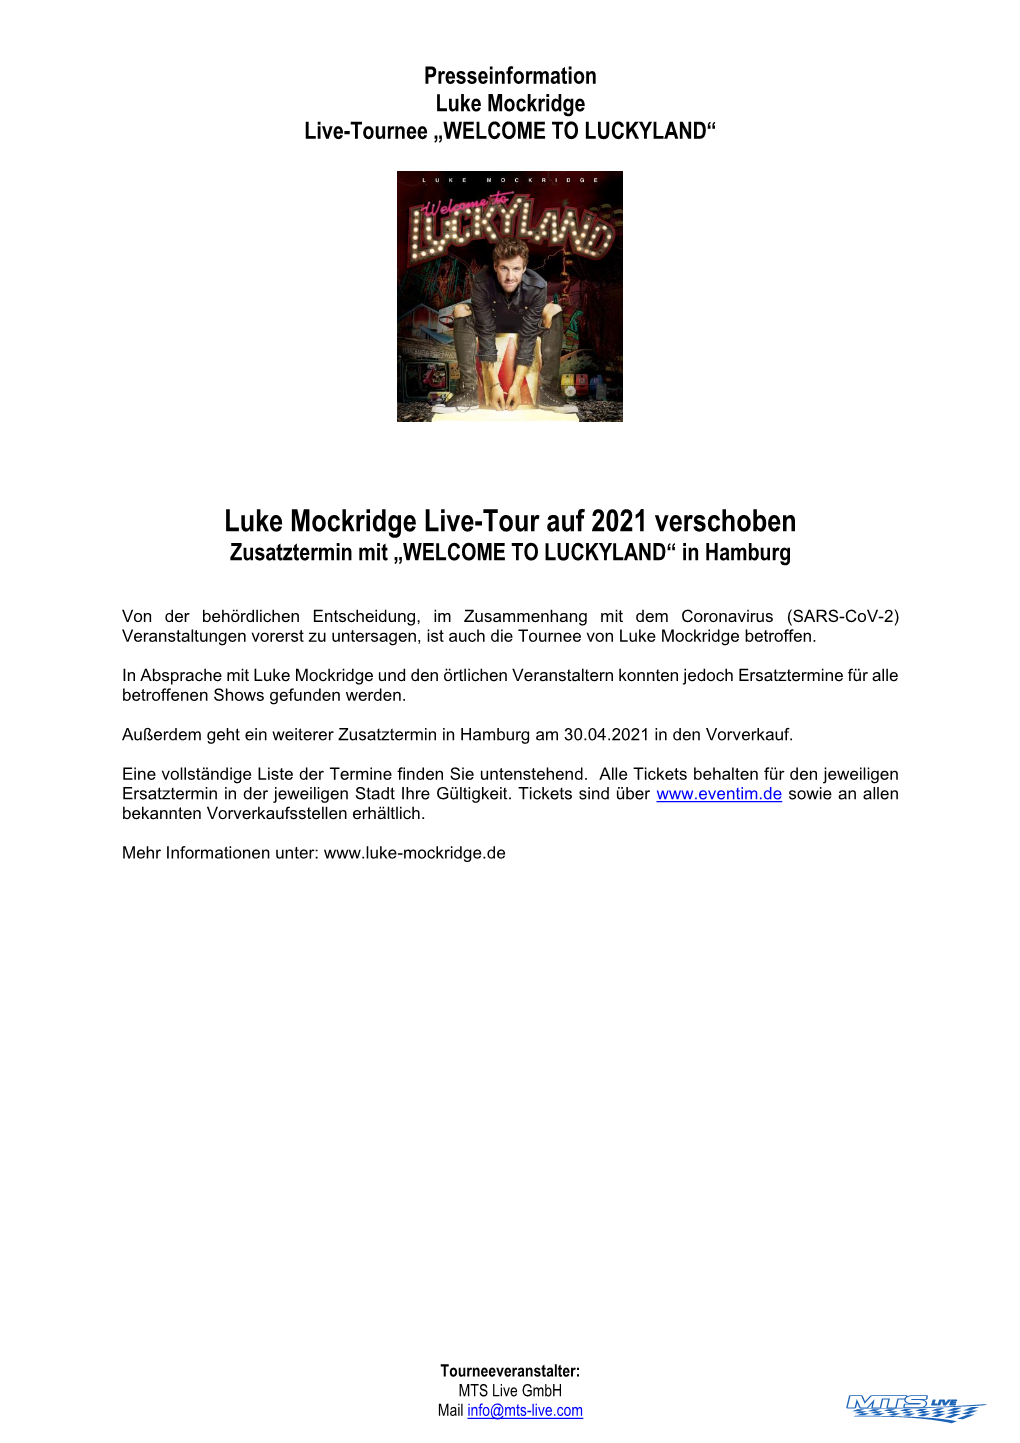 Luke Mockridge Live-Tour Auf 2021 Verschoben Zusatztermin Mit „WELCOME to LUCKYLAND“ in Hamburg